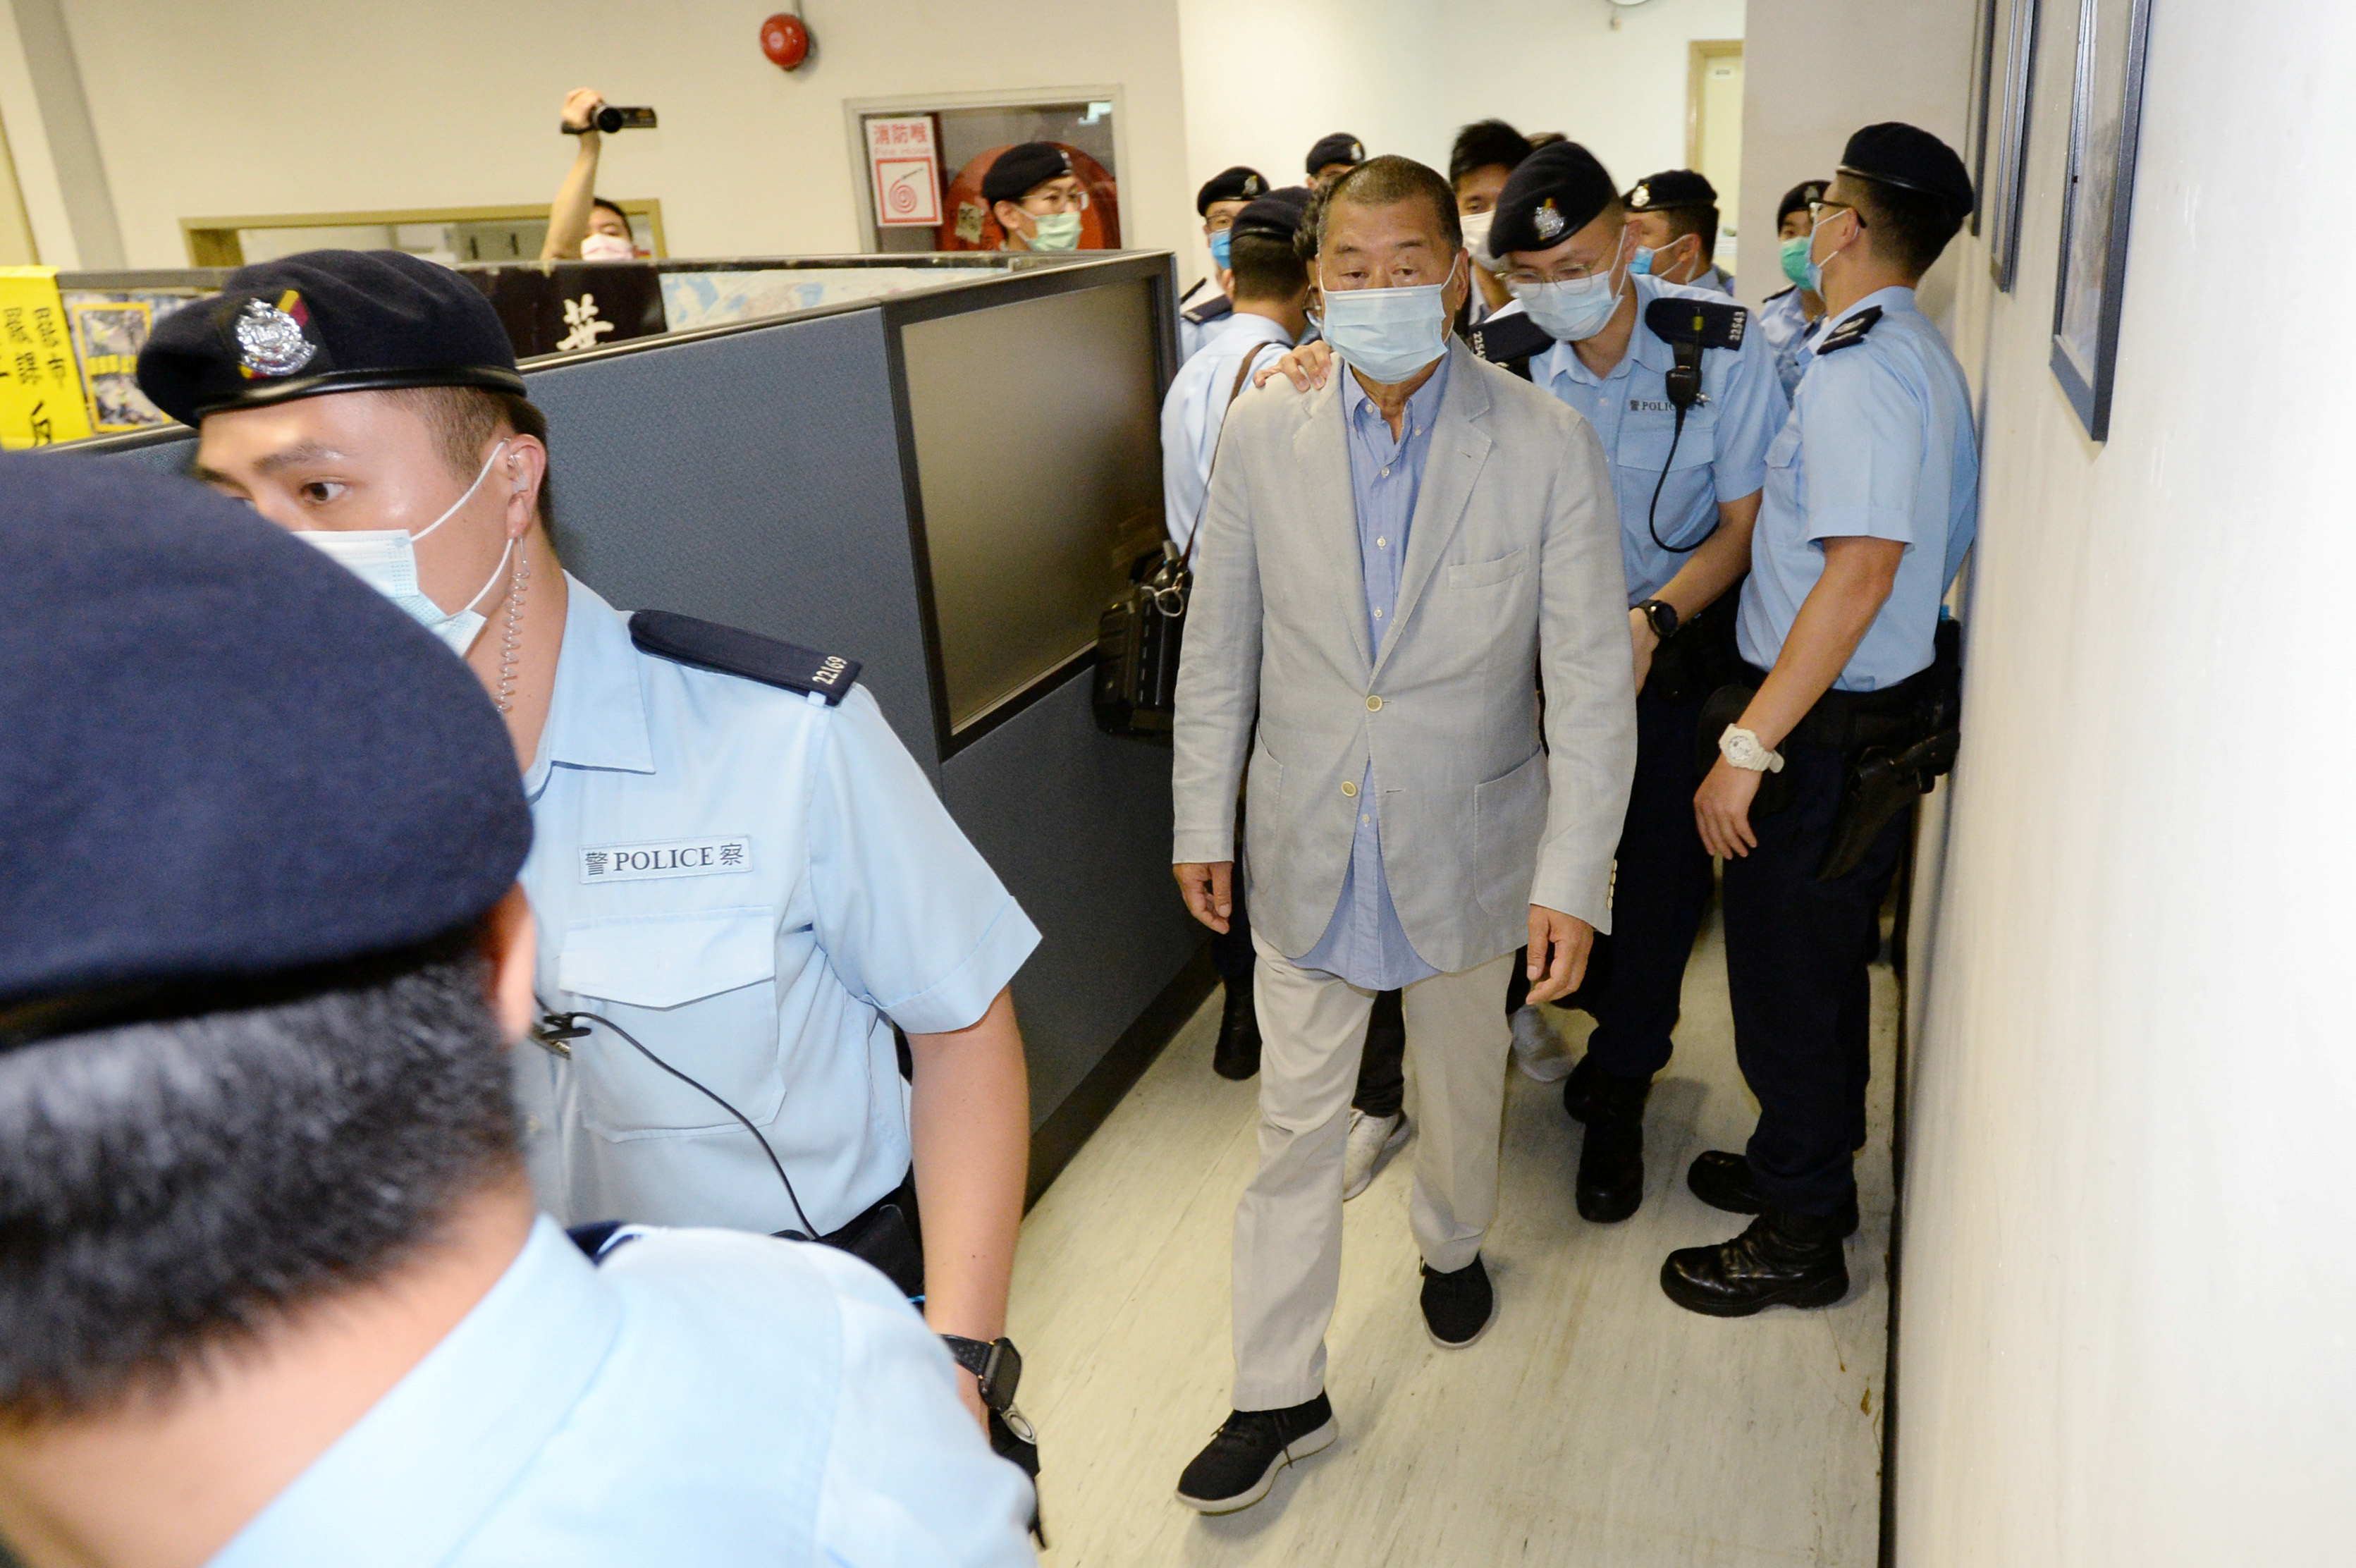 Jimmy Lai es escoltado por personal policial y llevado detenido desde las oficinas de Apple Daily en Hong Kong, China (Reuters)